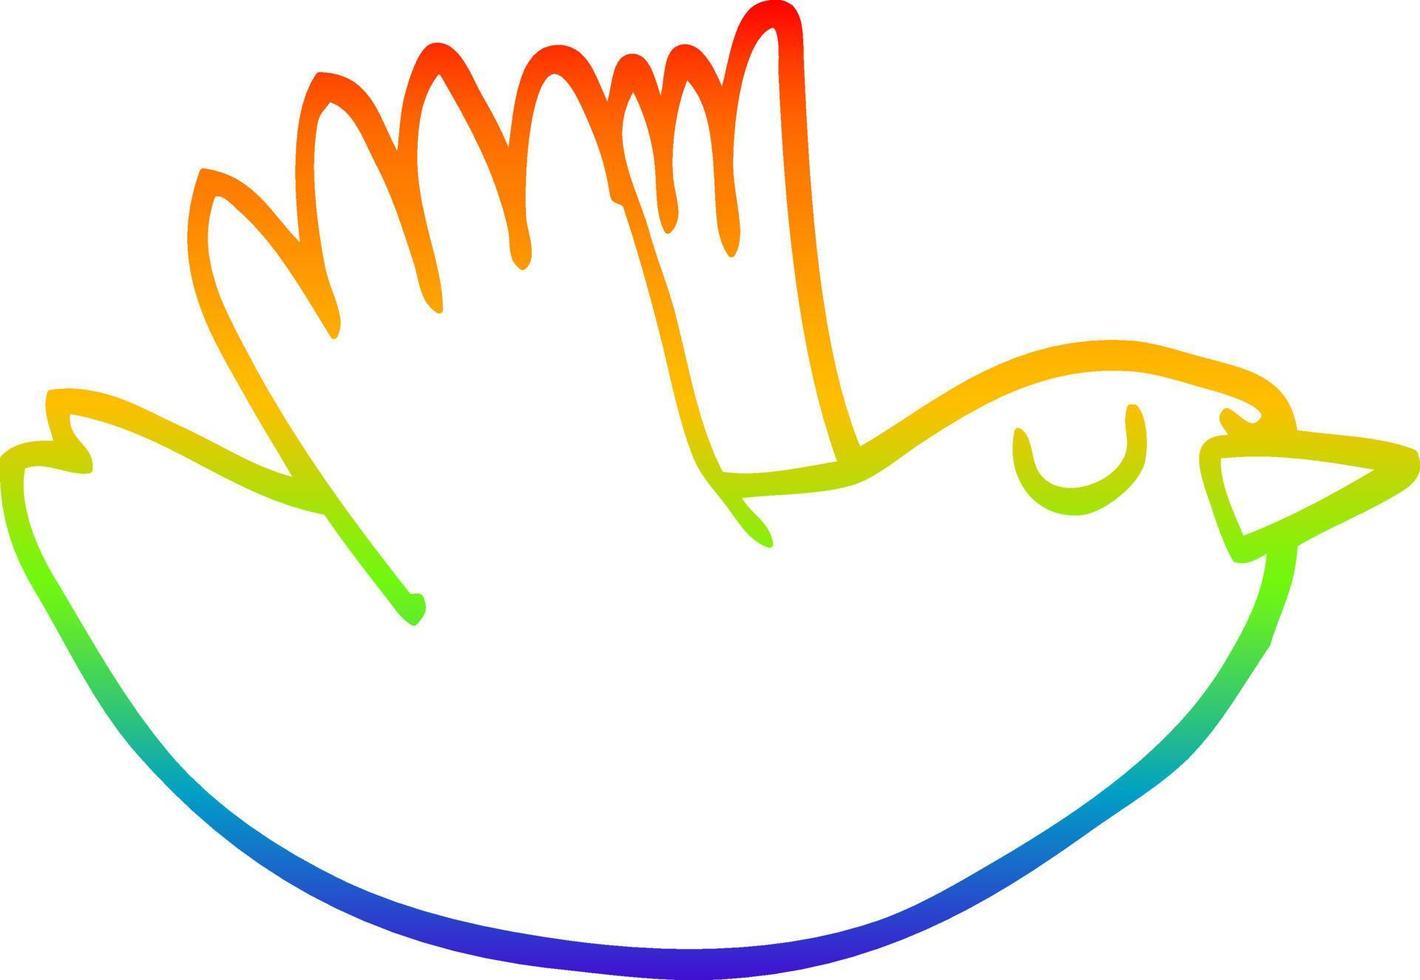 uccello volante del fumetto del disegno della linea del gradiente dell'arcobaleno vettore